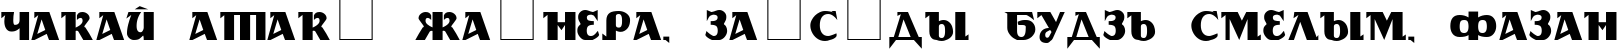 Пример написания шрифтом cyr_DS Rada текста на белорусском